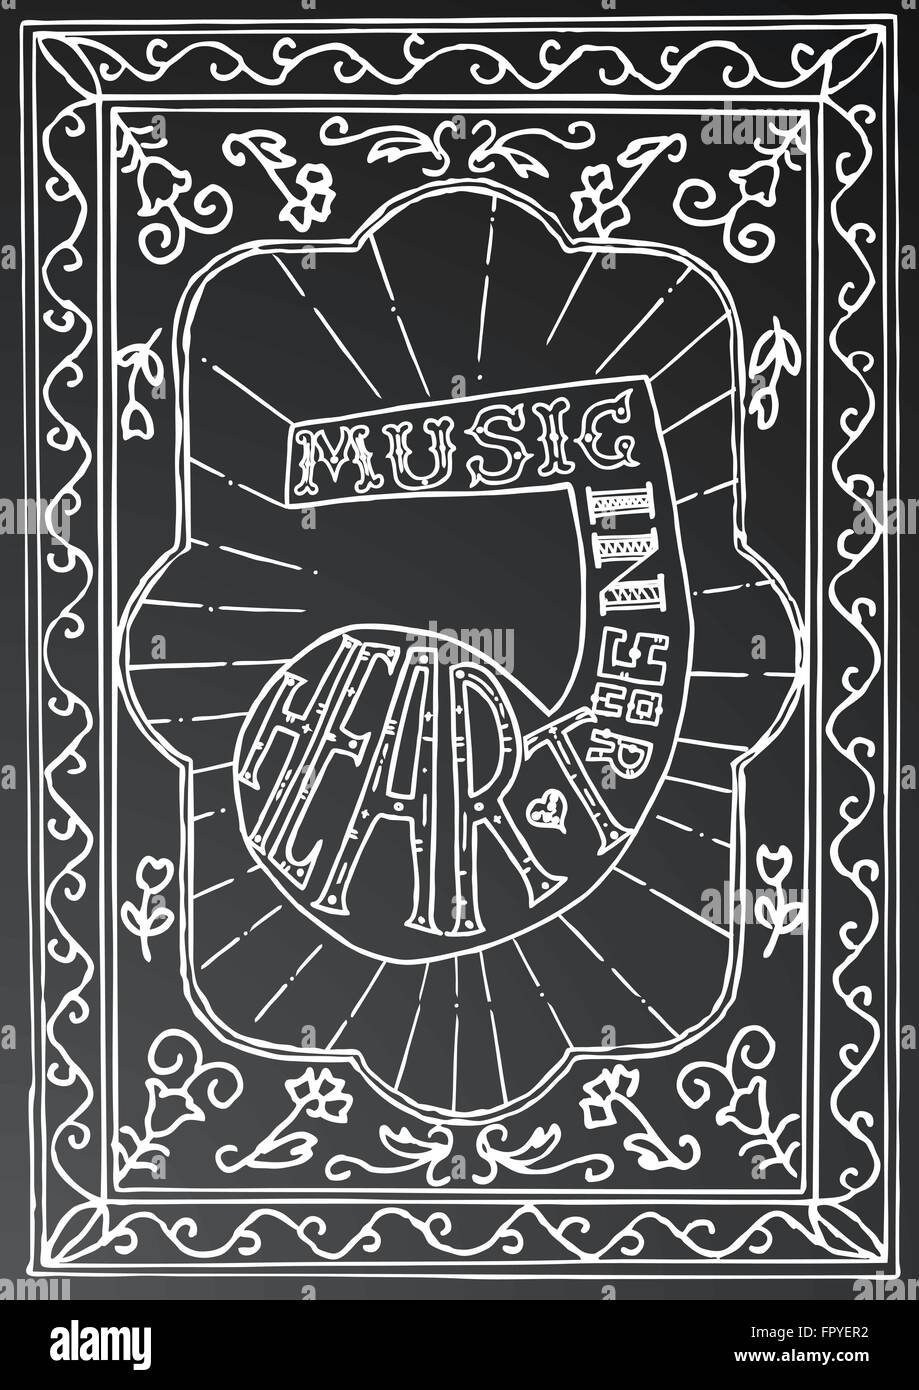 La musique dans votre cœur. Design lettrage dessiné à la main avec une note de musique et image sur craie noire. Typographie concept pour t-shirt Illustration de Vecteur